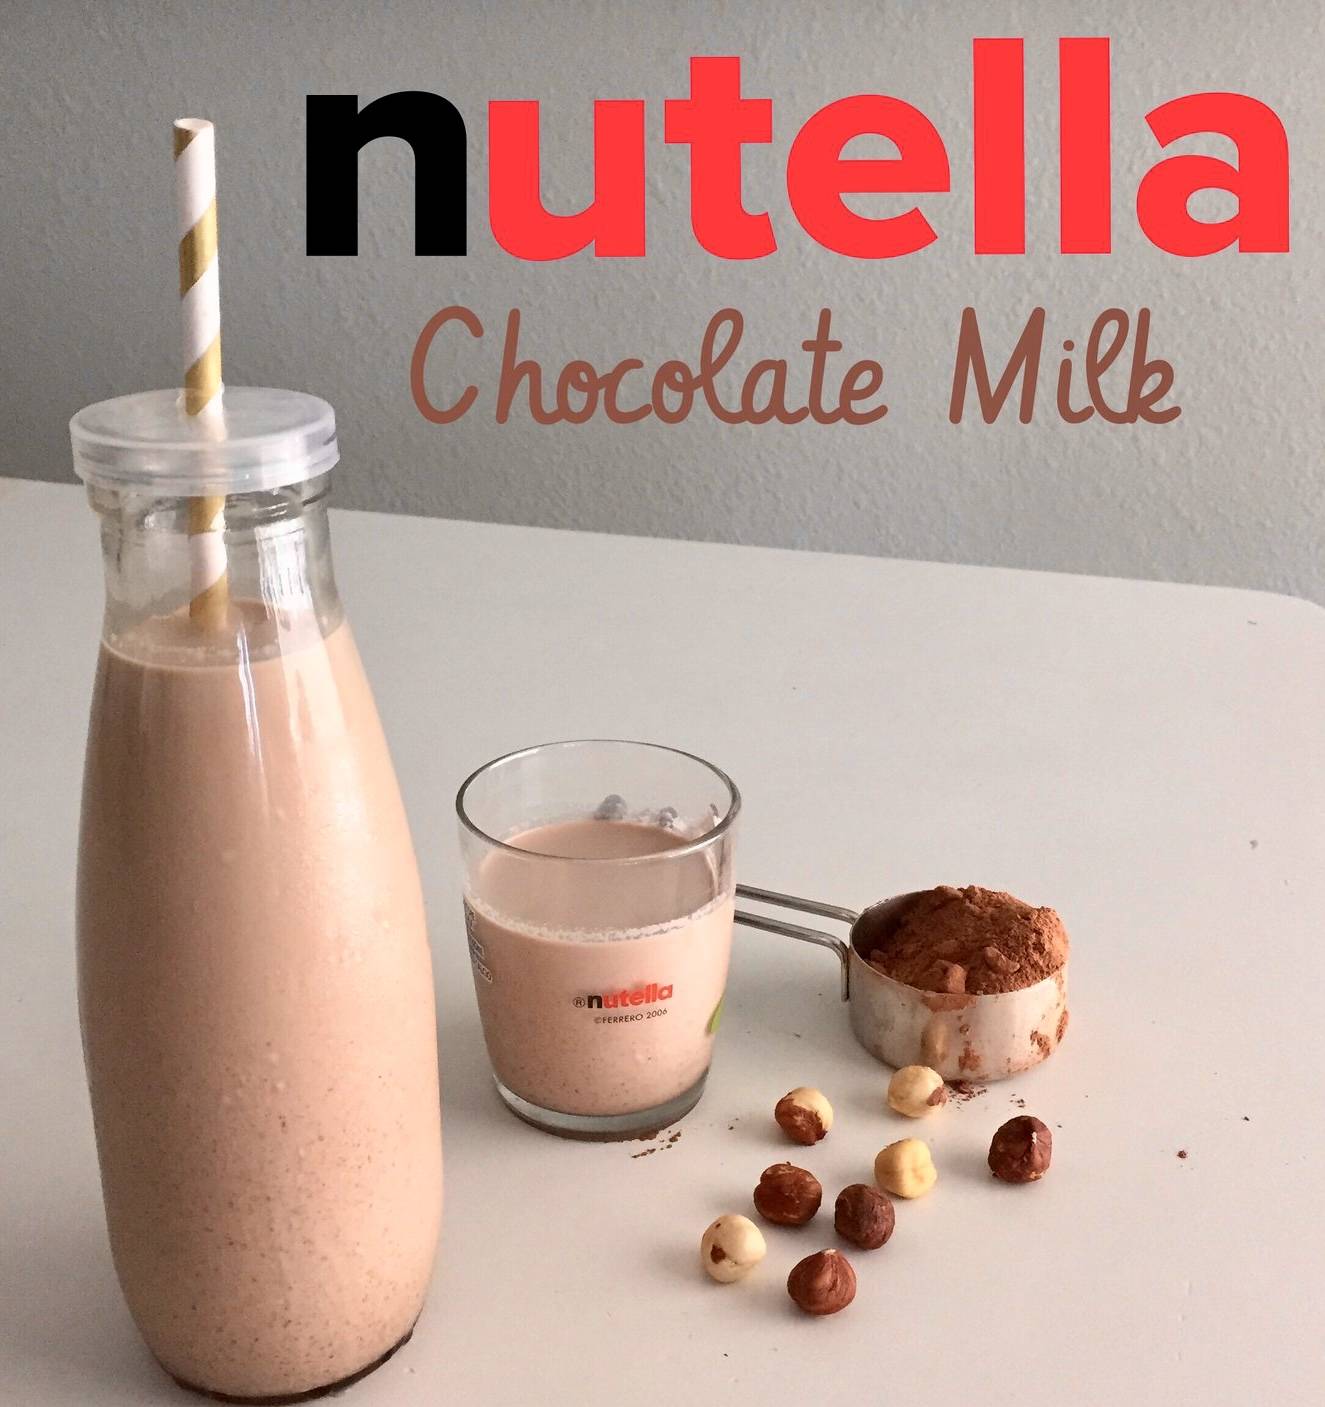 Nutella au lait / Milk with Nutella